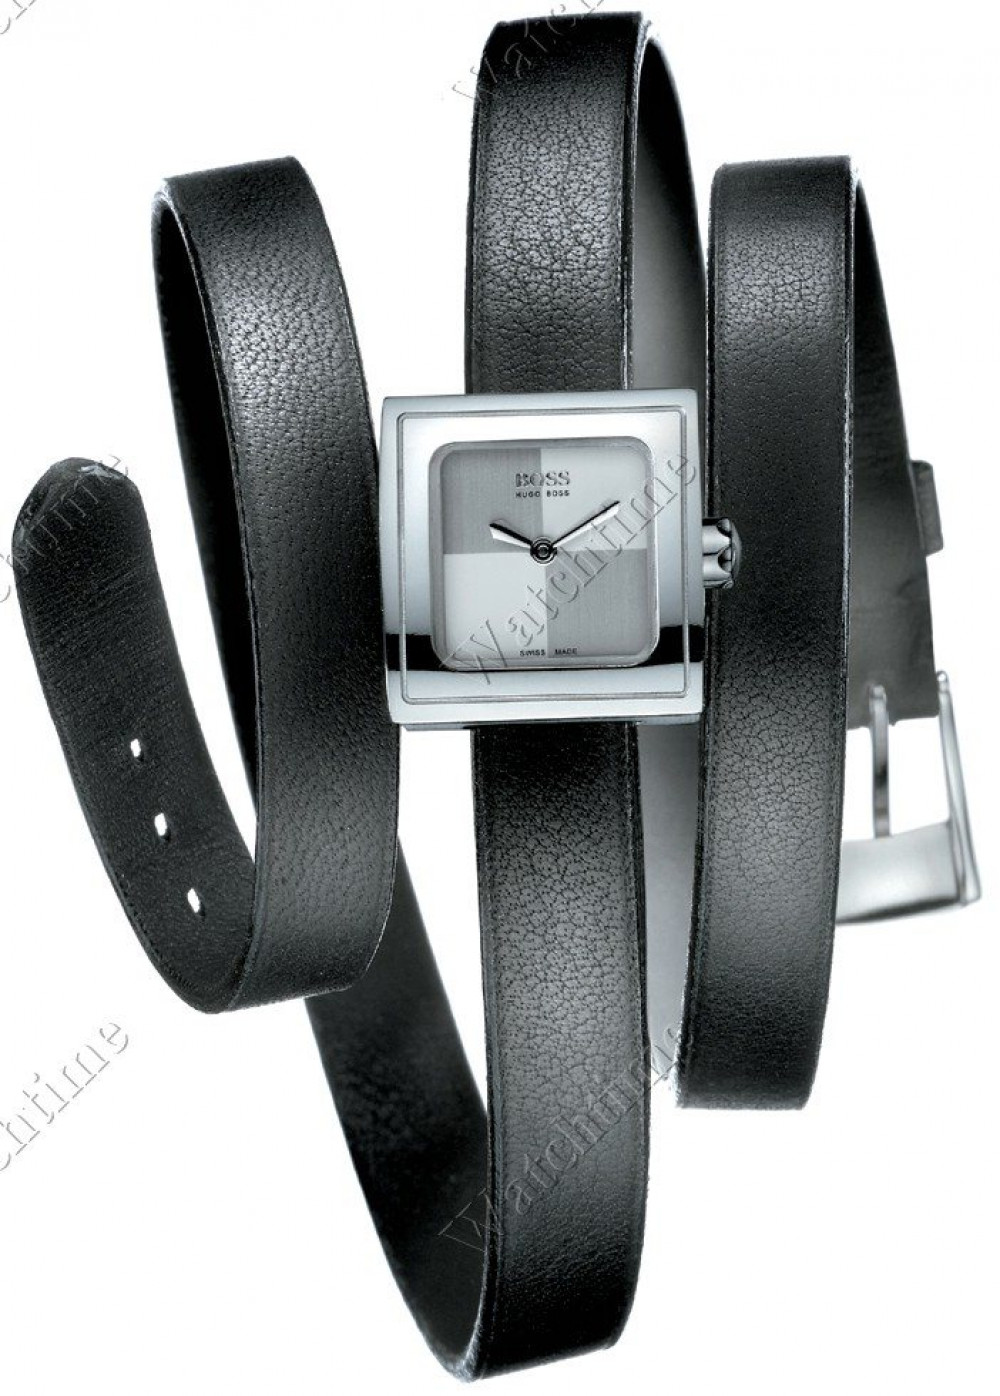 Zegarek firmy Hugo Boss, model Twist